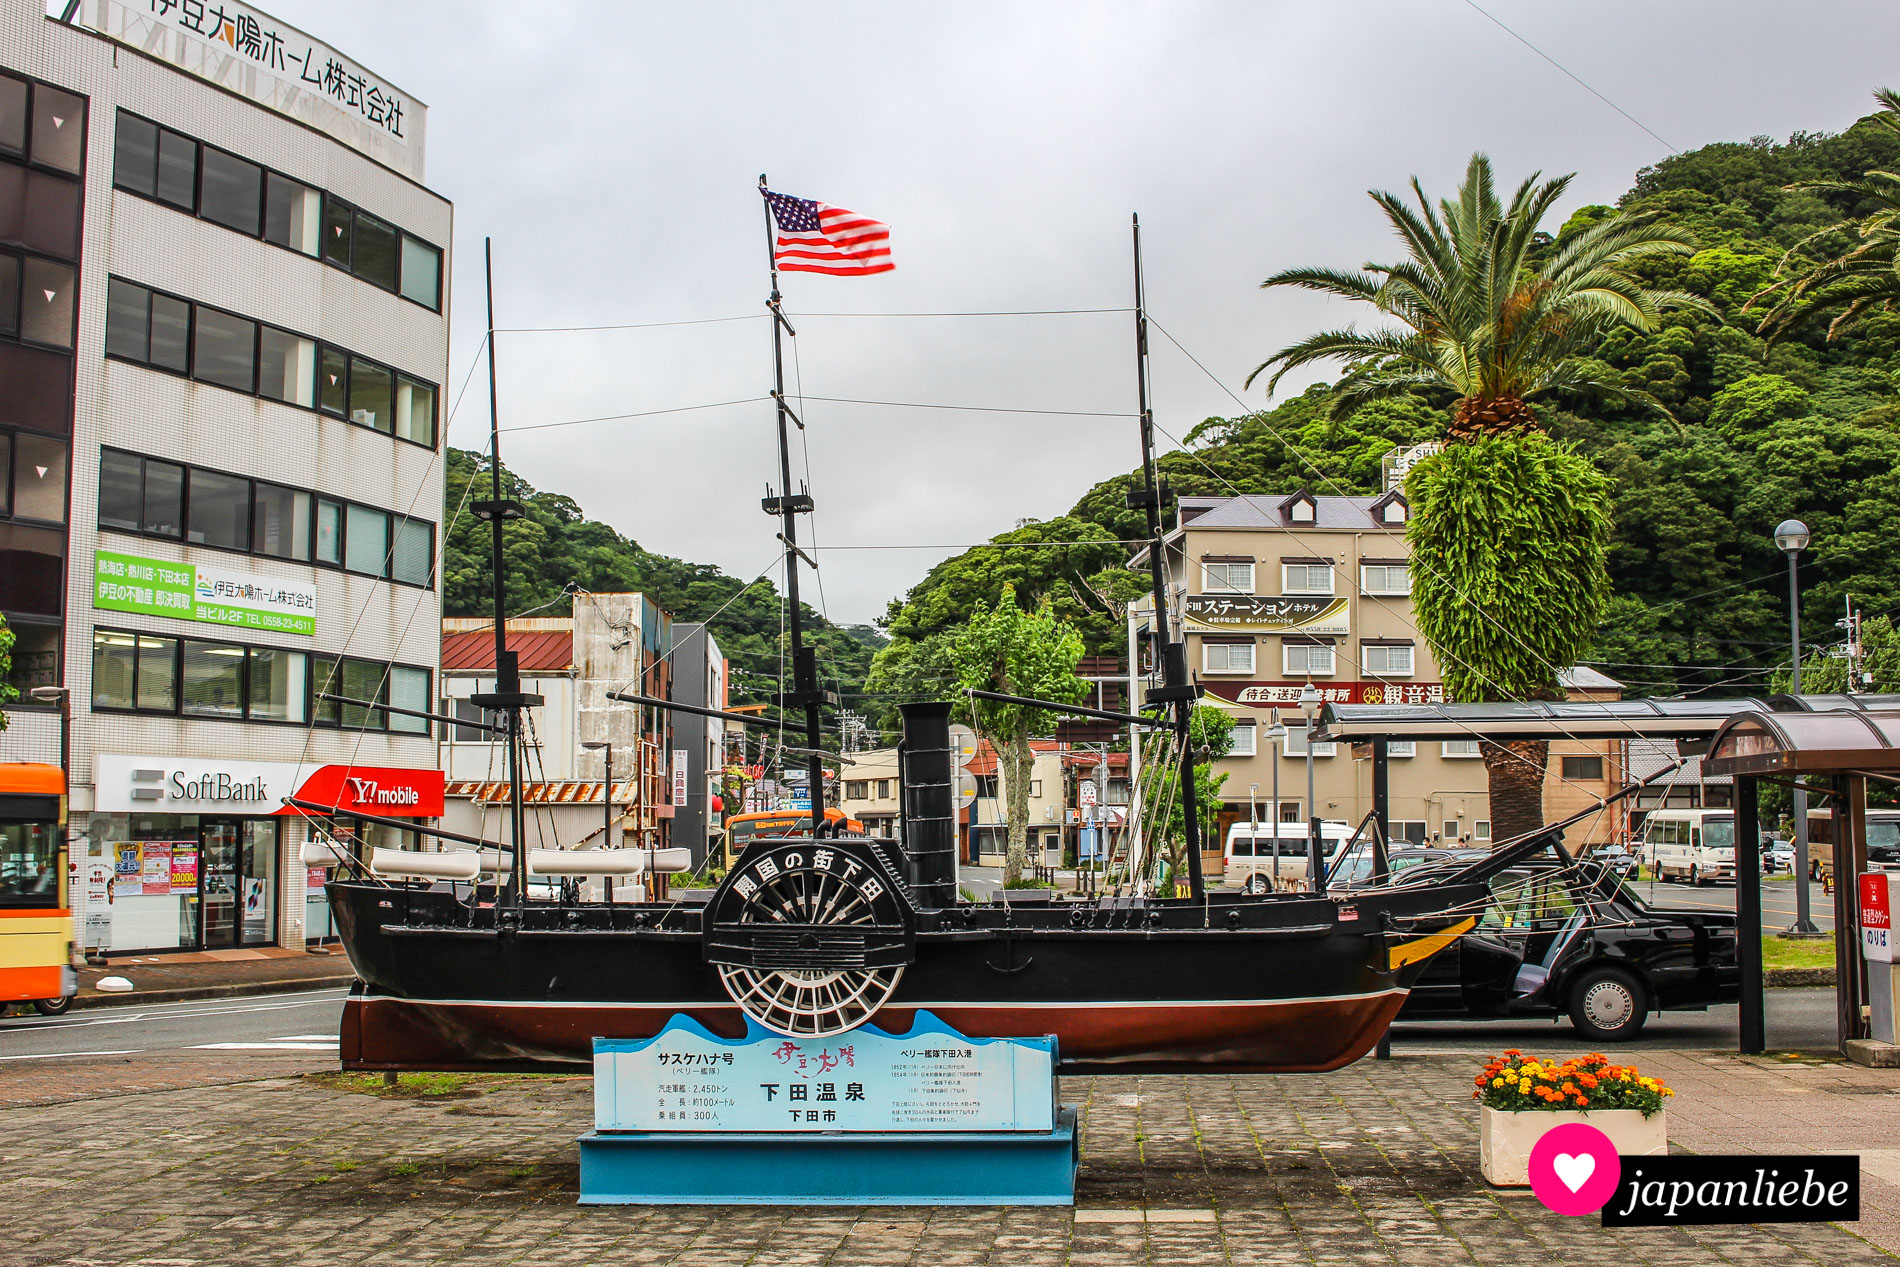 Ein Modell von Commodore Perrys schwarzen Schiffen begrüßt Besucher der Stadt am Bahnhof.